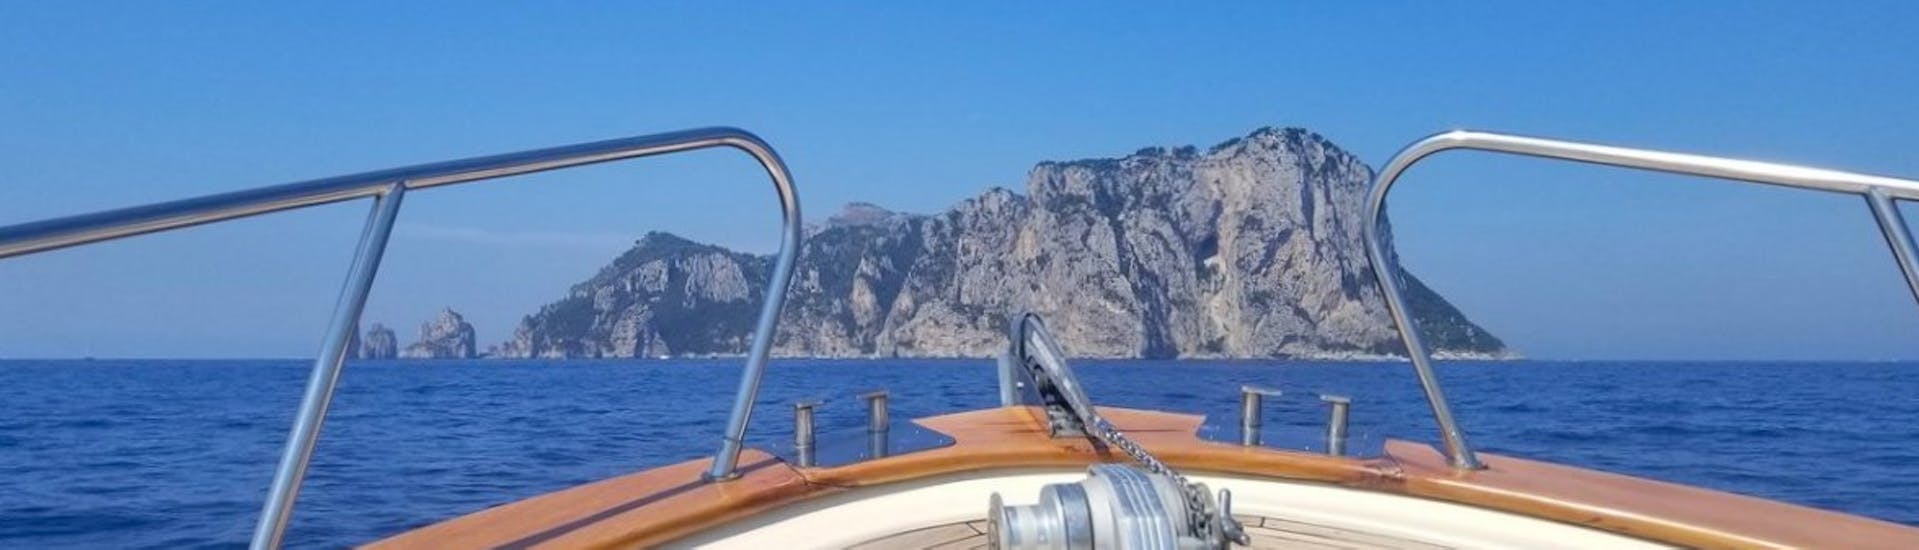 Private Bootstour von Sorrent - Amalfiküste  & Schwimmen.